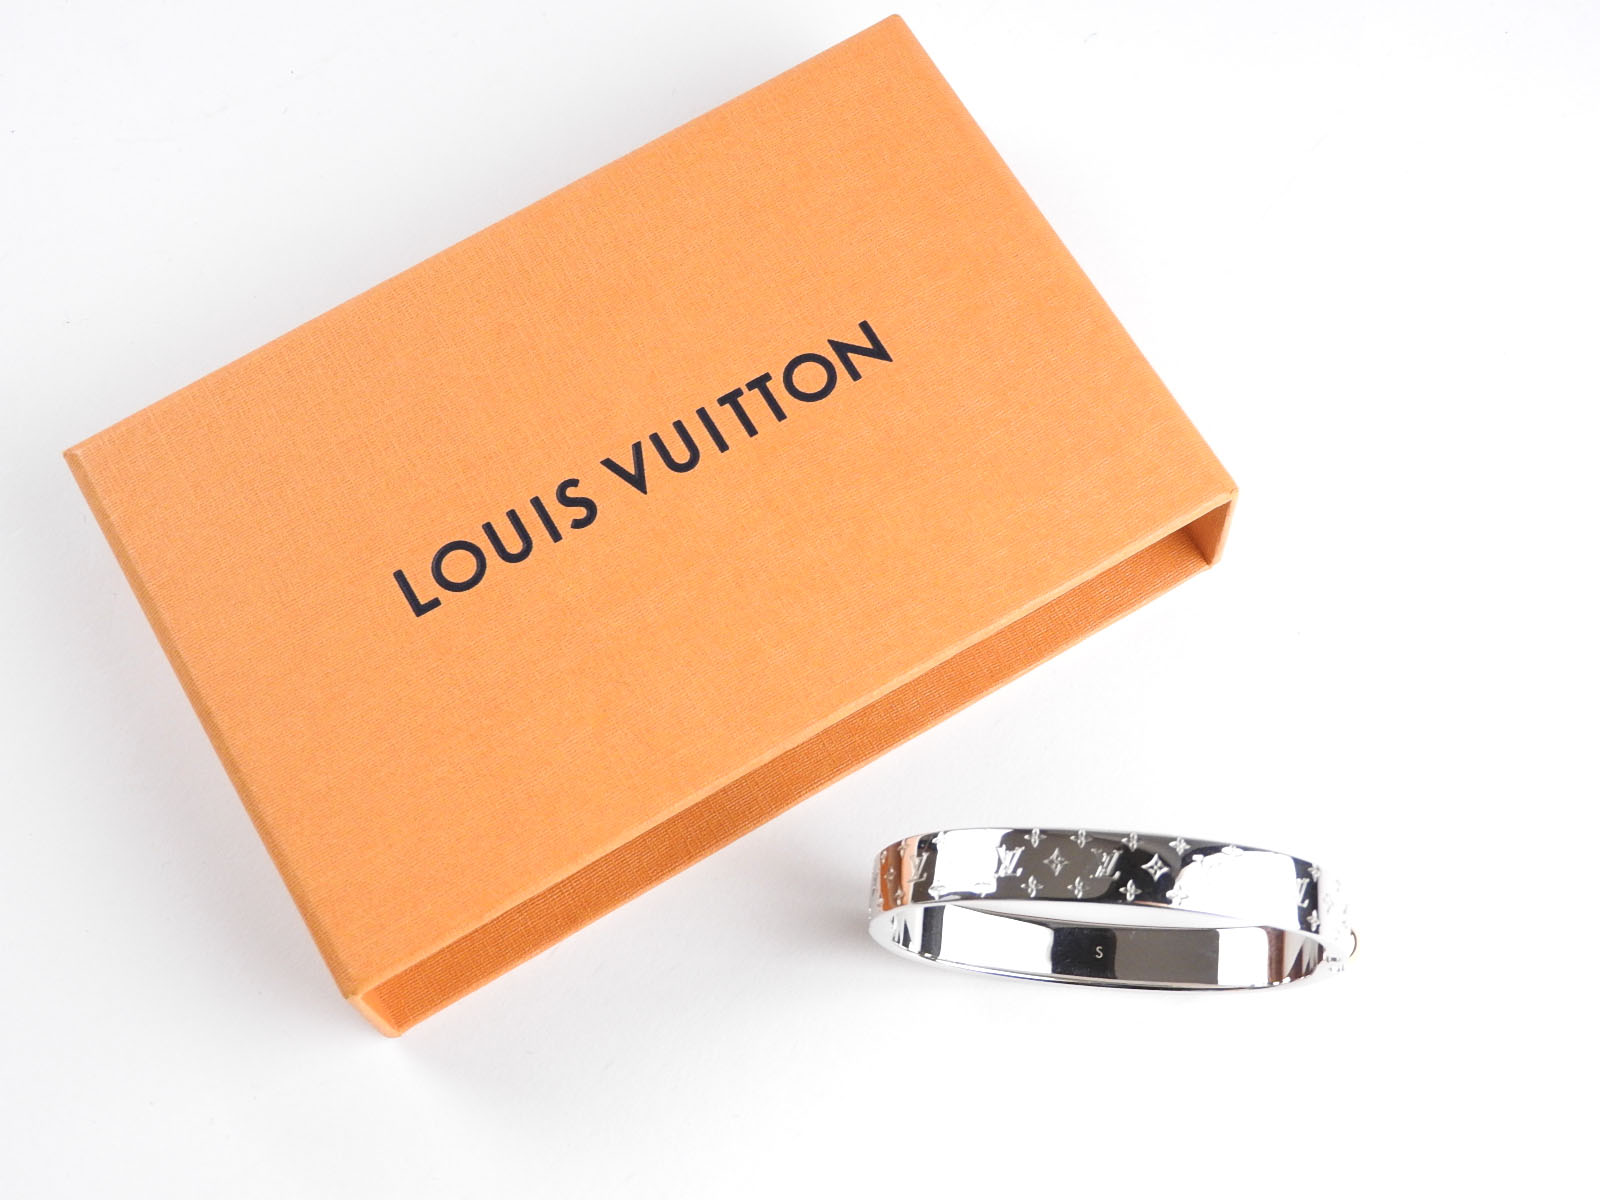 Louis Vuitton Nanogram Cuff at 1stDibs  louis vuitton nanogram cuff  bracelet, louis vuitton cuff bracelet price, lv cuff bracelet